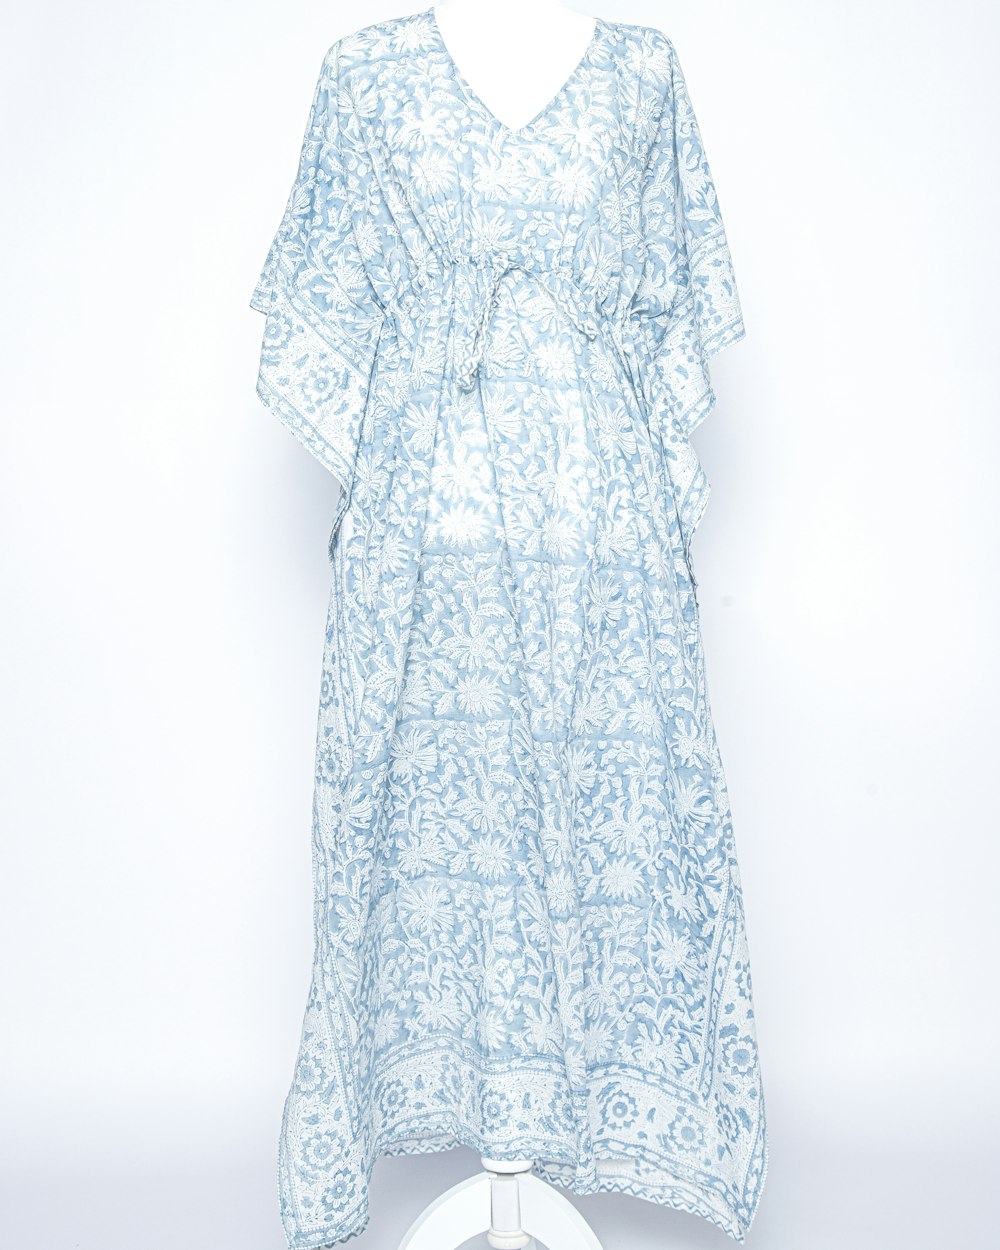 ein weiß-blaues Kleid auf einer Schaufensterpuppe